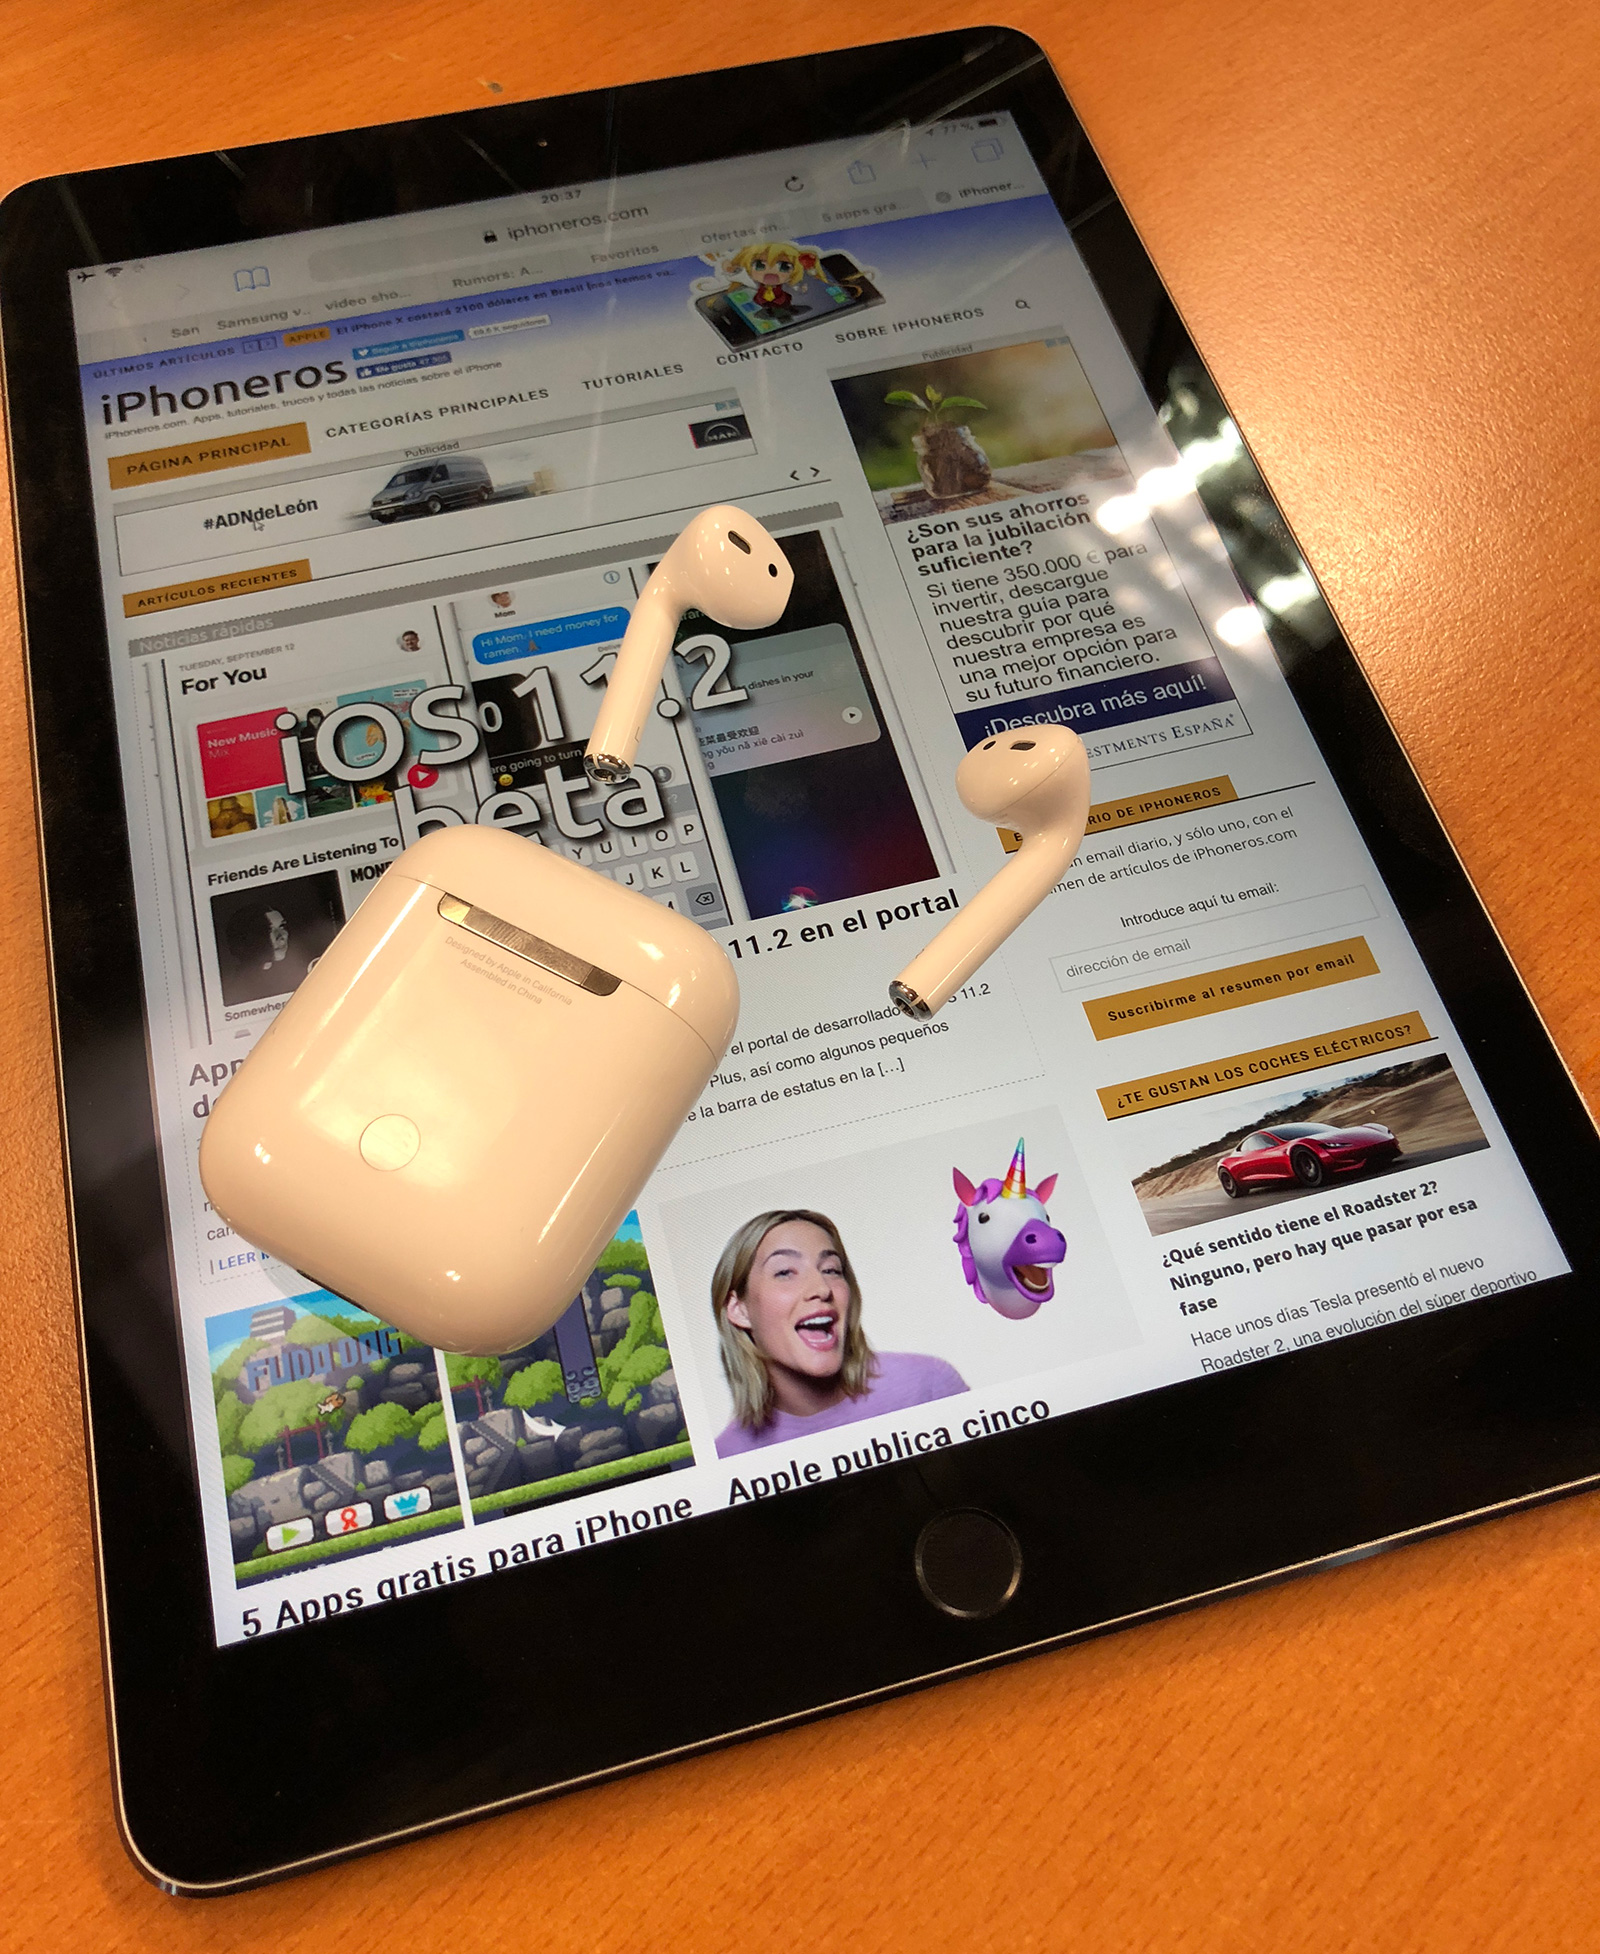 iPad Pro con iPhoneros cargada, y unos AirPods